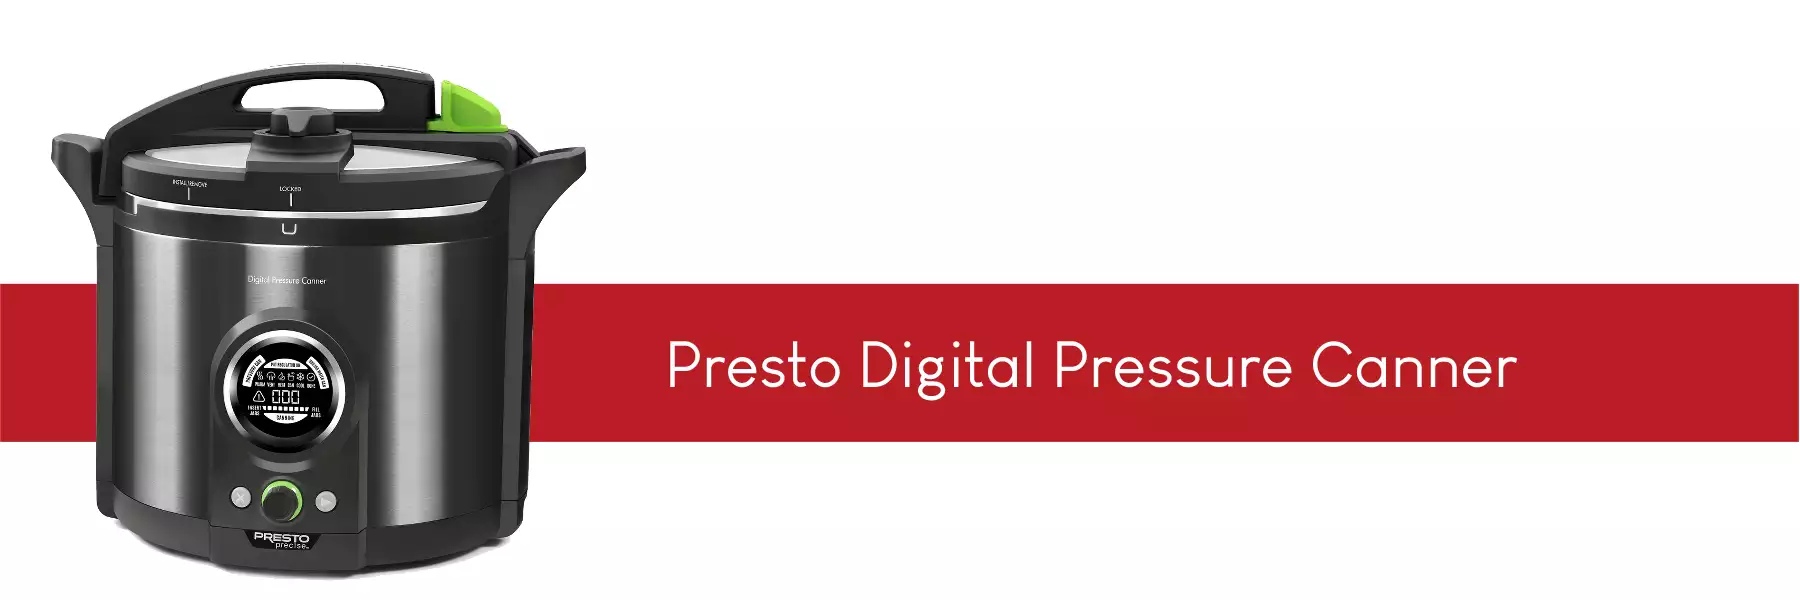 presto digital pressure canner 02144 stocked in the uk from lovejars.co.uk